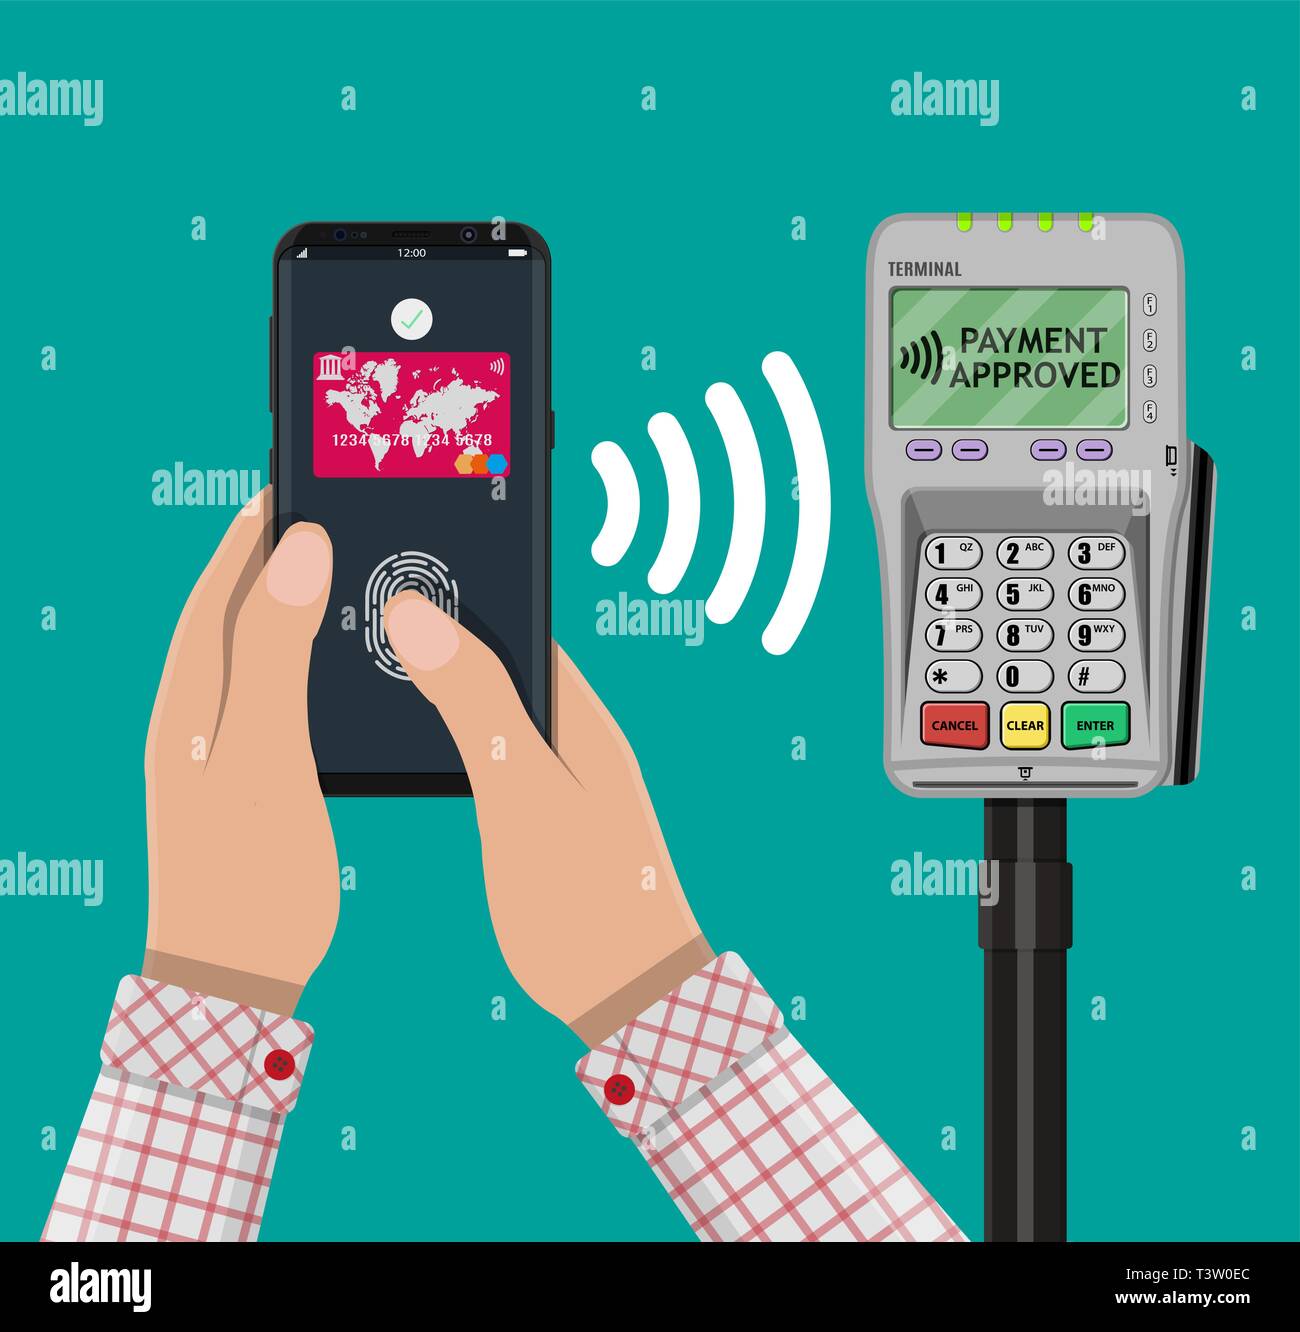 Terminale Pos conferma il pagamento tramite smartphone con sensore di  impronte digitali. La tecnologia NFC e pagamenti wireless concetto.  Illustrazione Vettoriale in design piatto Immagine e Vettoriale - Alamy